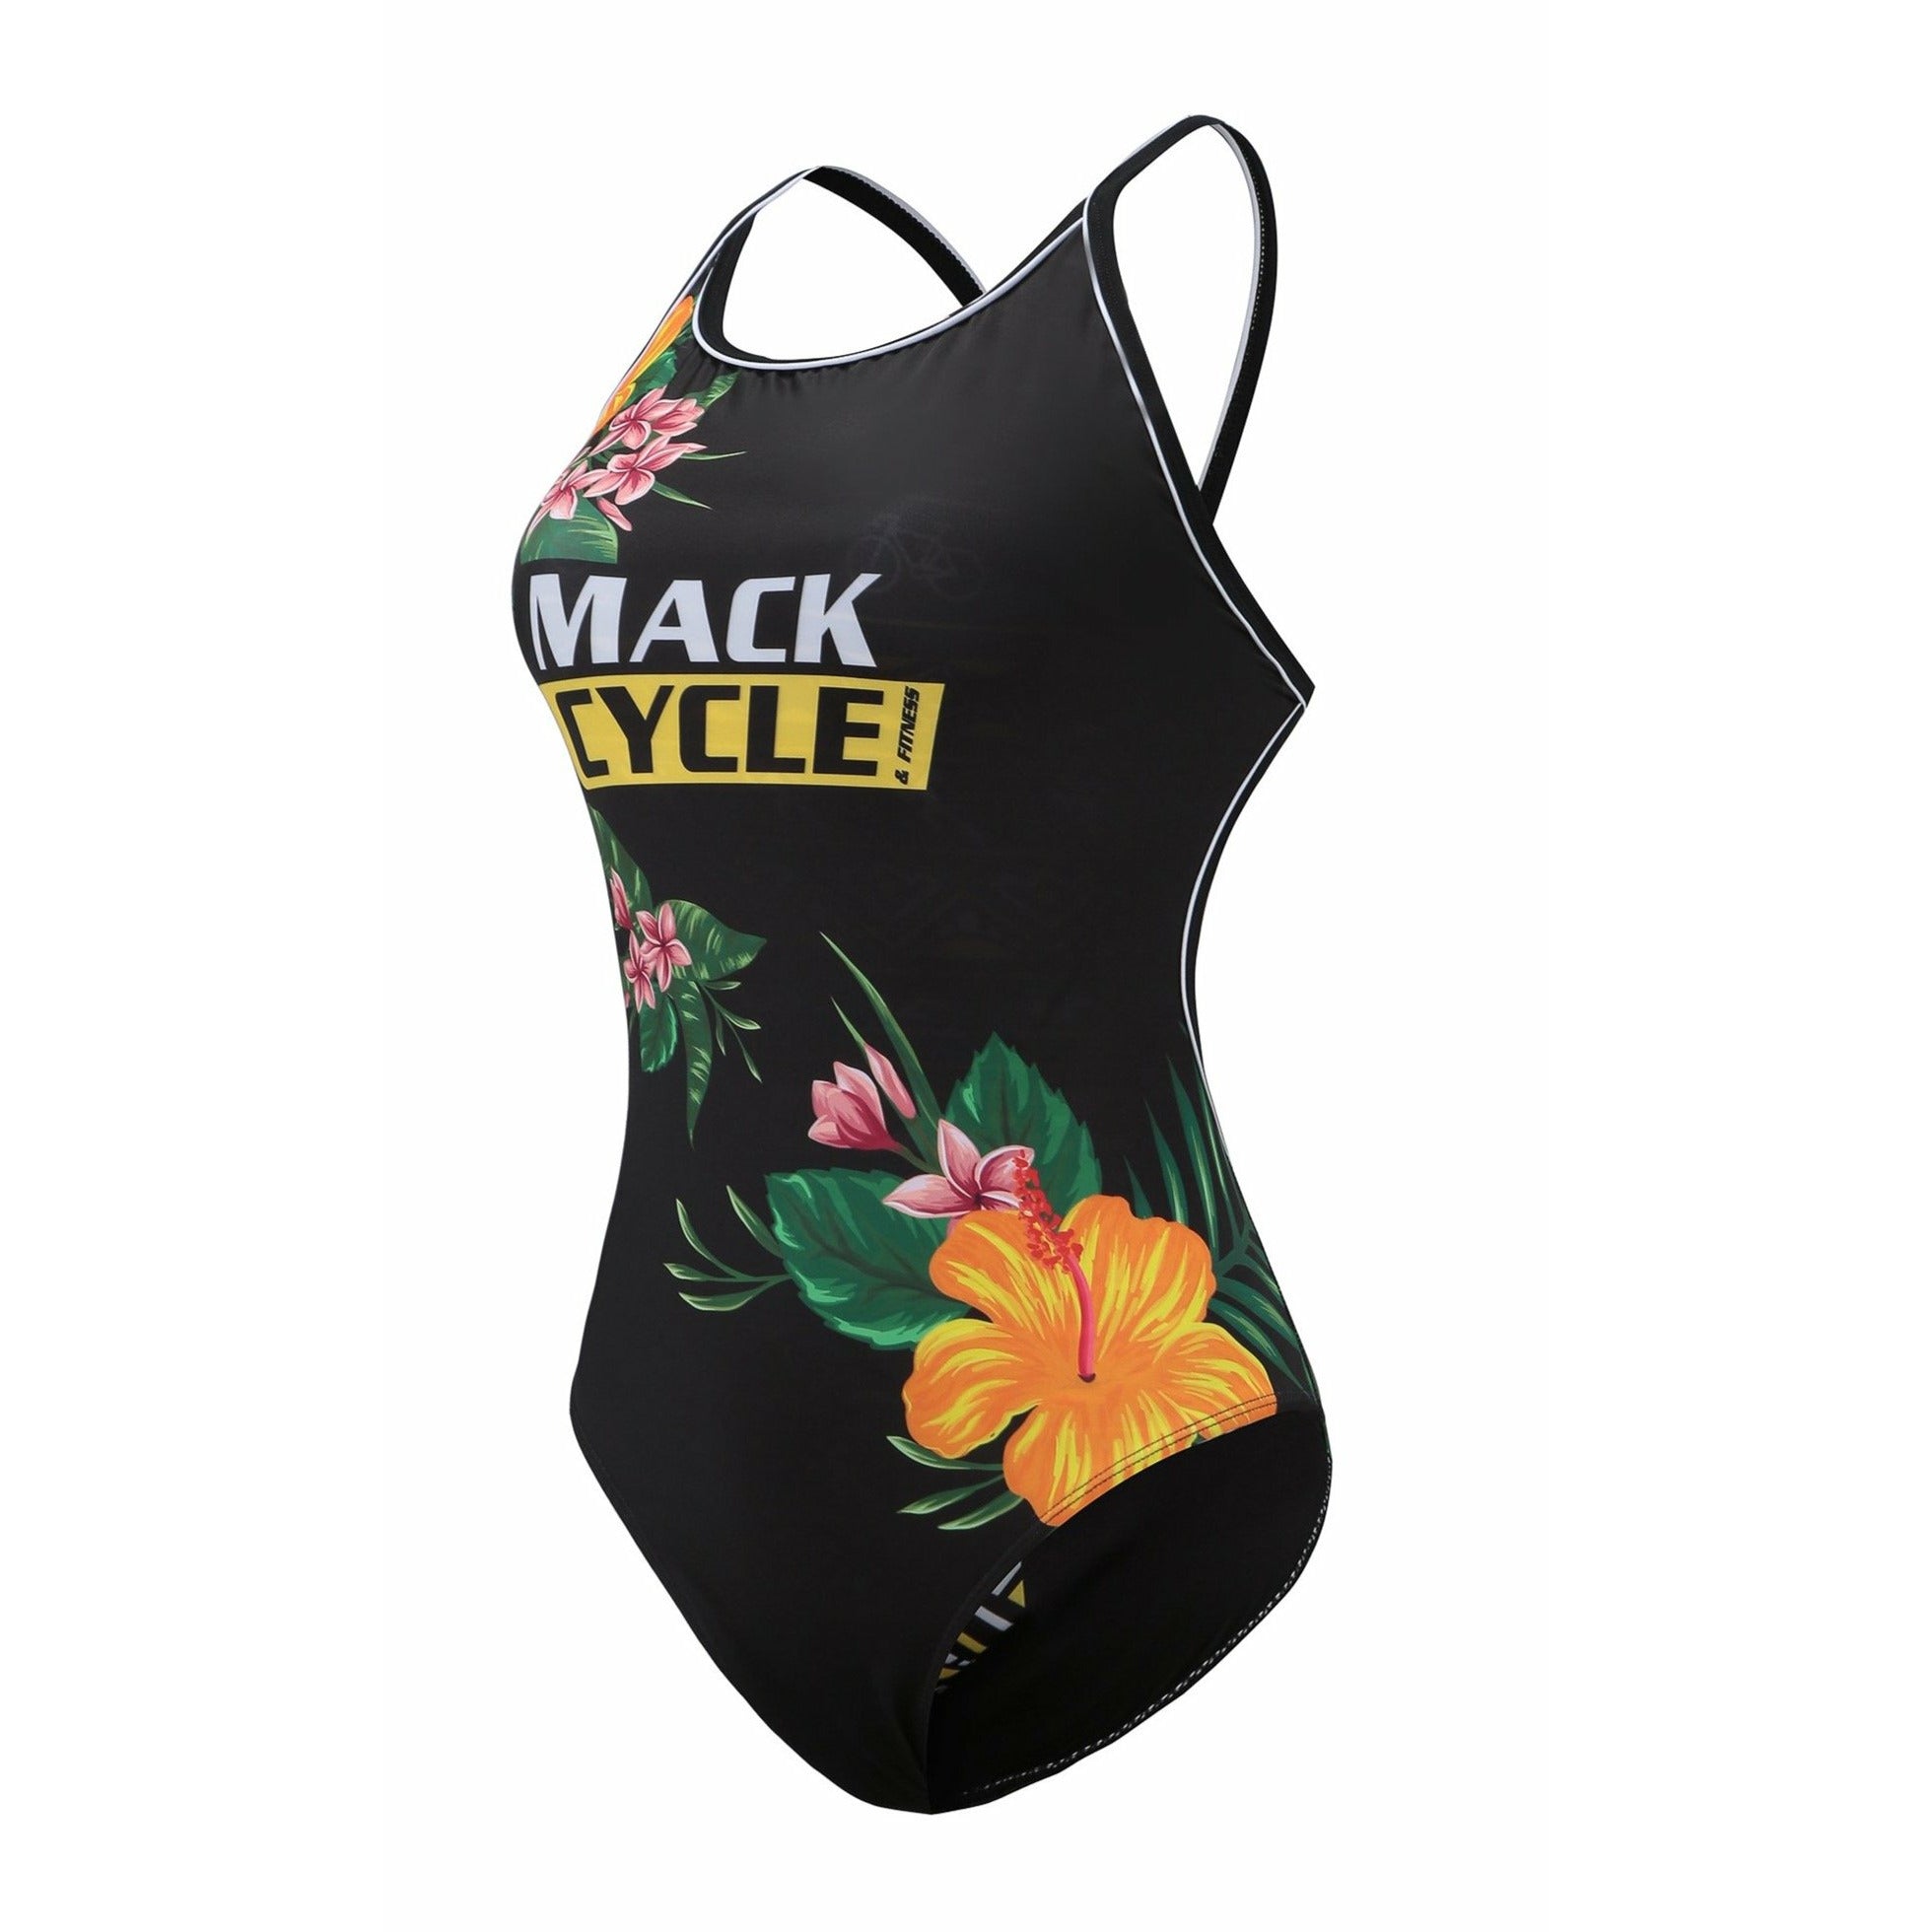 Mack Cycle Women's Swim Suit